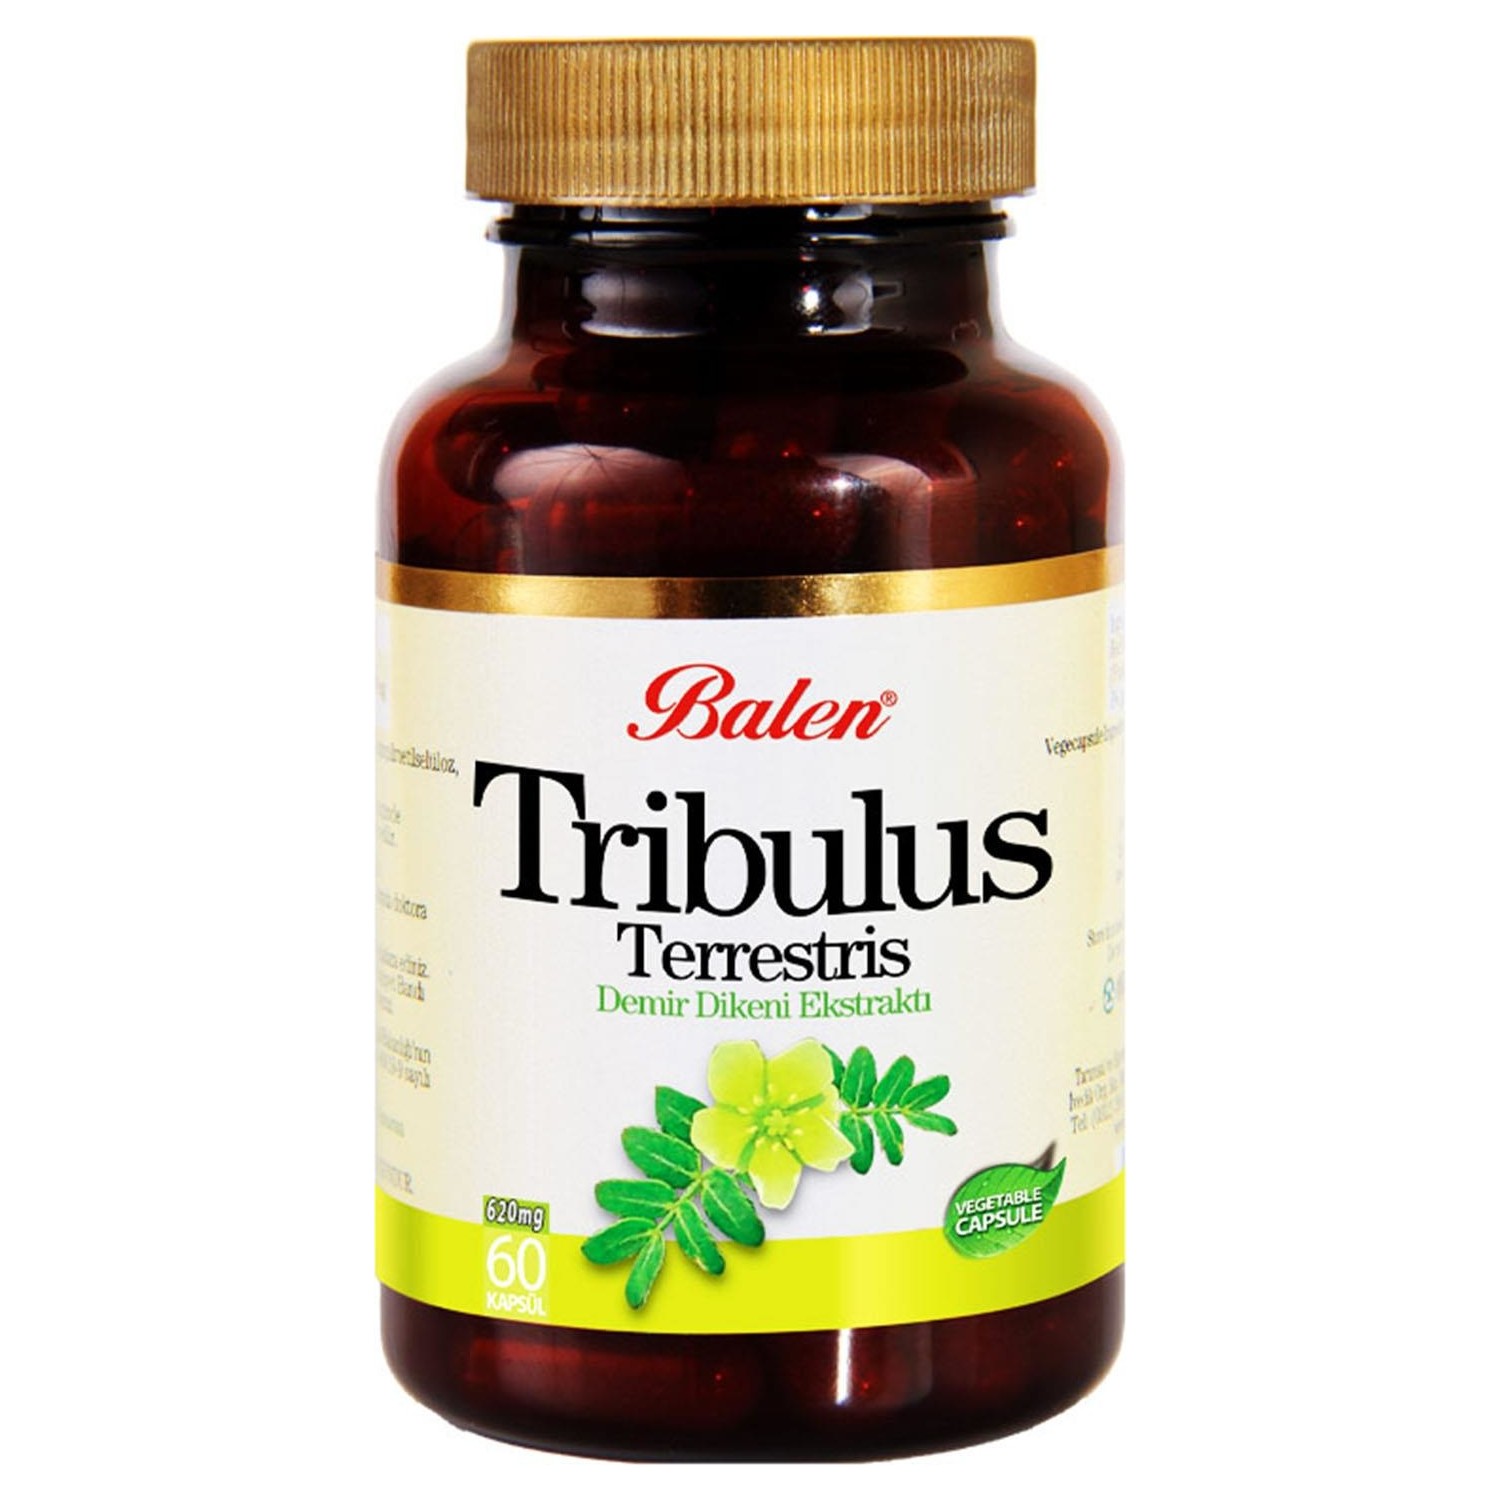 Пищевая добавка Balen Tribulus Terrestris 620 мг, 2 упаковки по 60 капсул